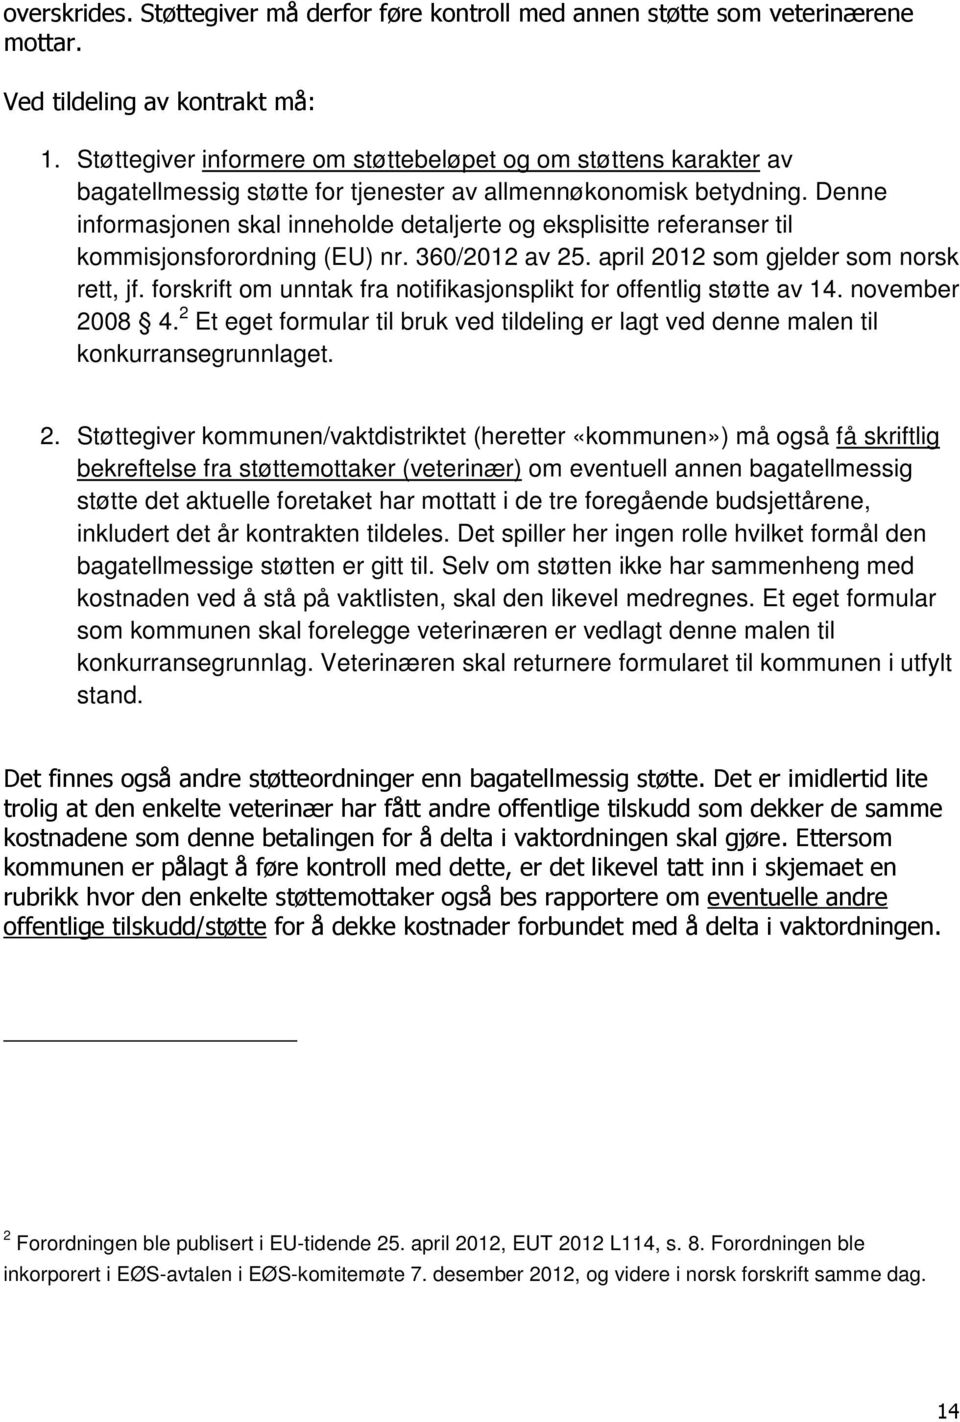 Denne informasjonen skal inneholde detaljerte og eksplisitte referanser til kommisjonsforordning (EU) nr. 360/2012 av 25. april 2012 som gjelder som norsk rett, jf.